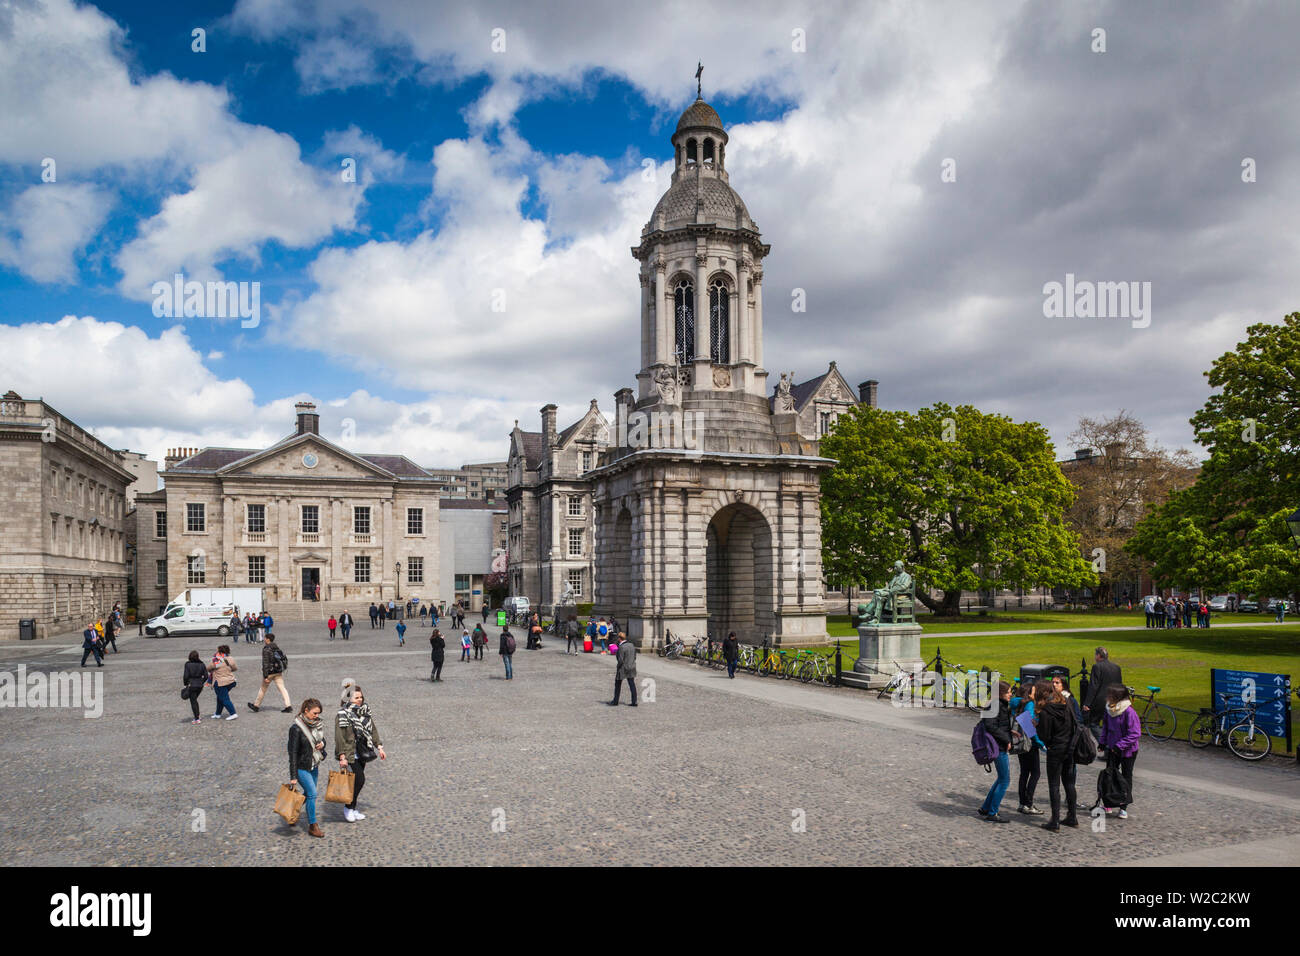 Irlanda, Dublín, Trinity College, la Plaza del Parlamento y el Campanile Foto de stock